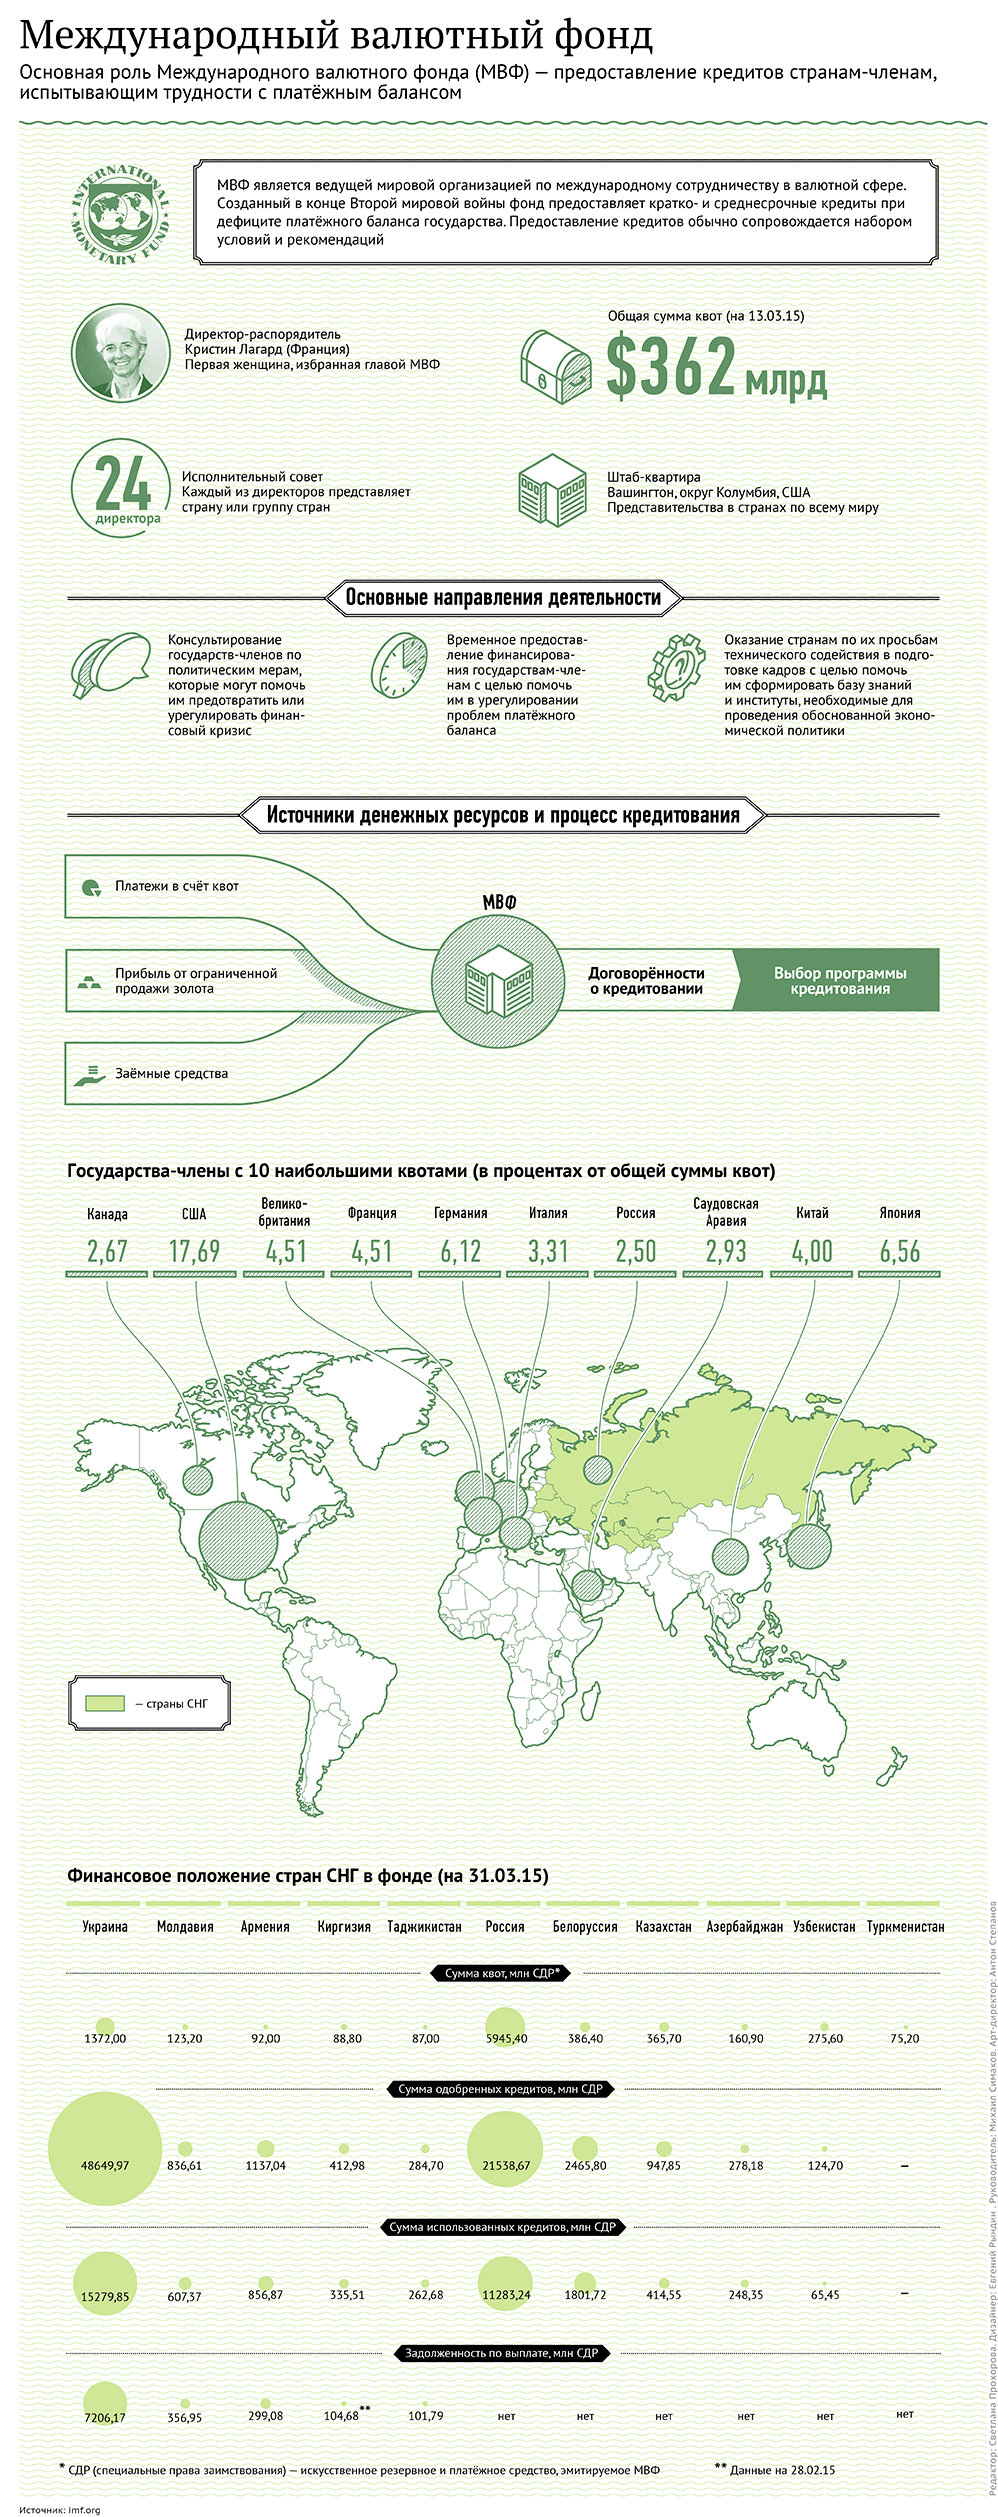 Международный валютный фонд. Инфографика - Sputnik Таджикистан